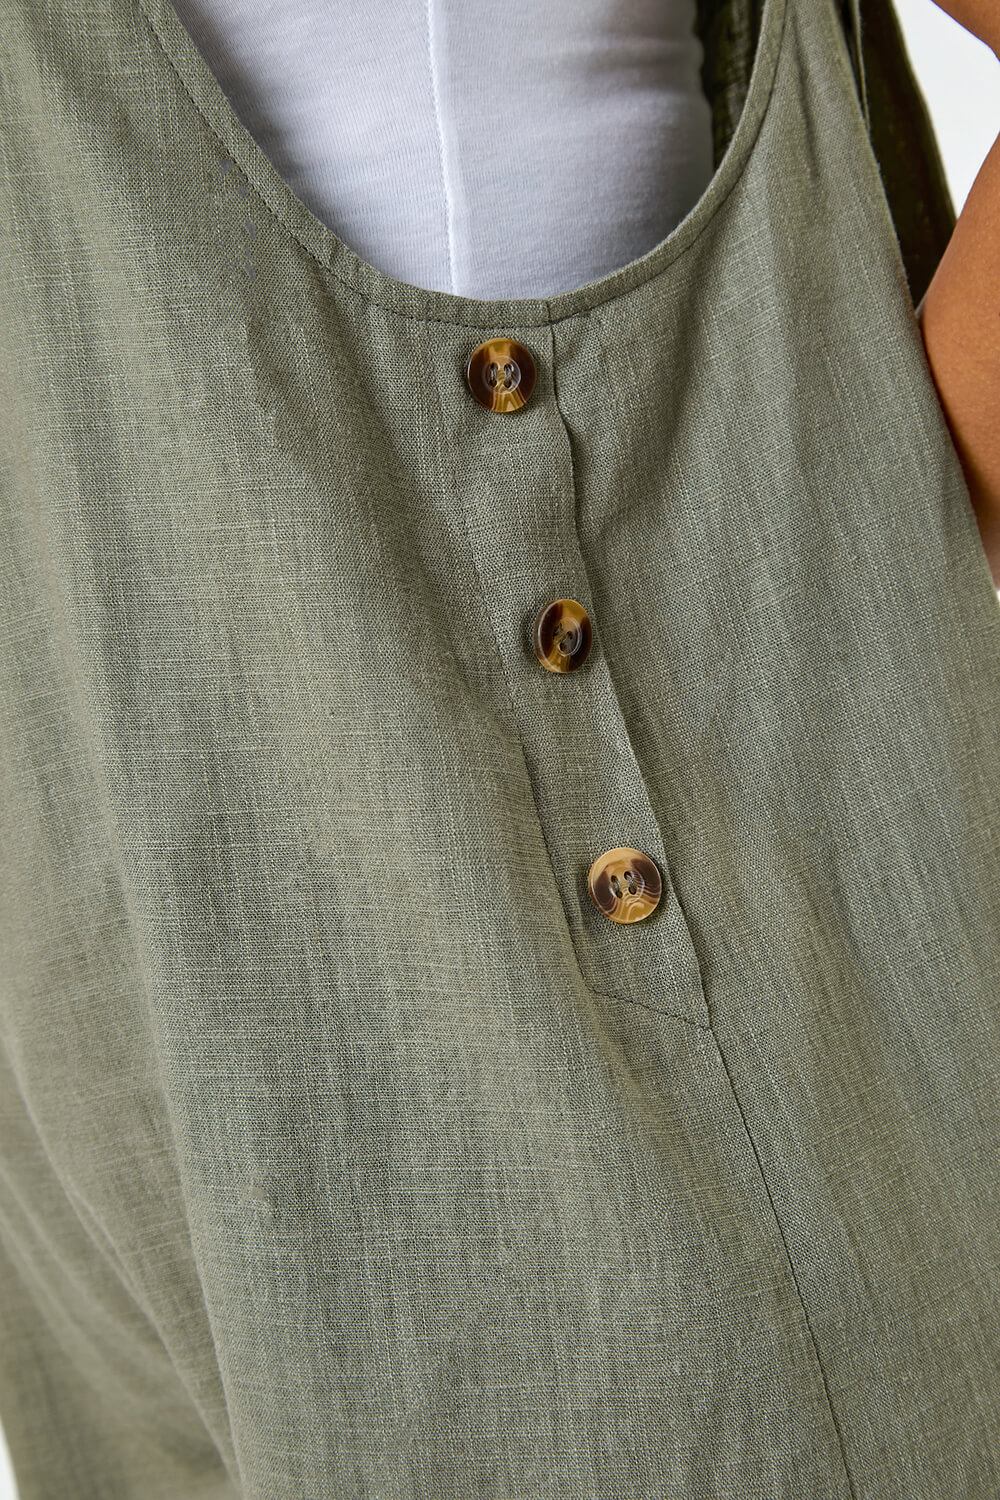 KHAKI Shoulder Tie Cotton Playsuit, Image 5 of 5